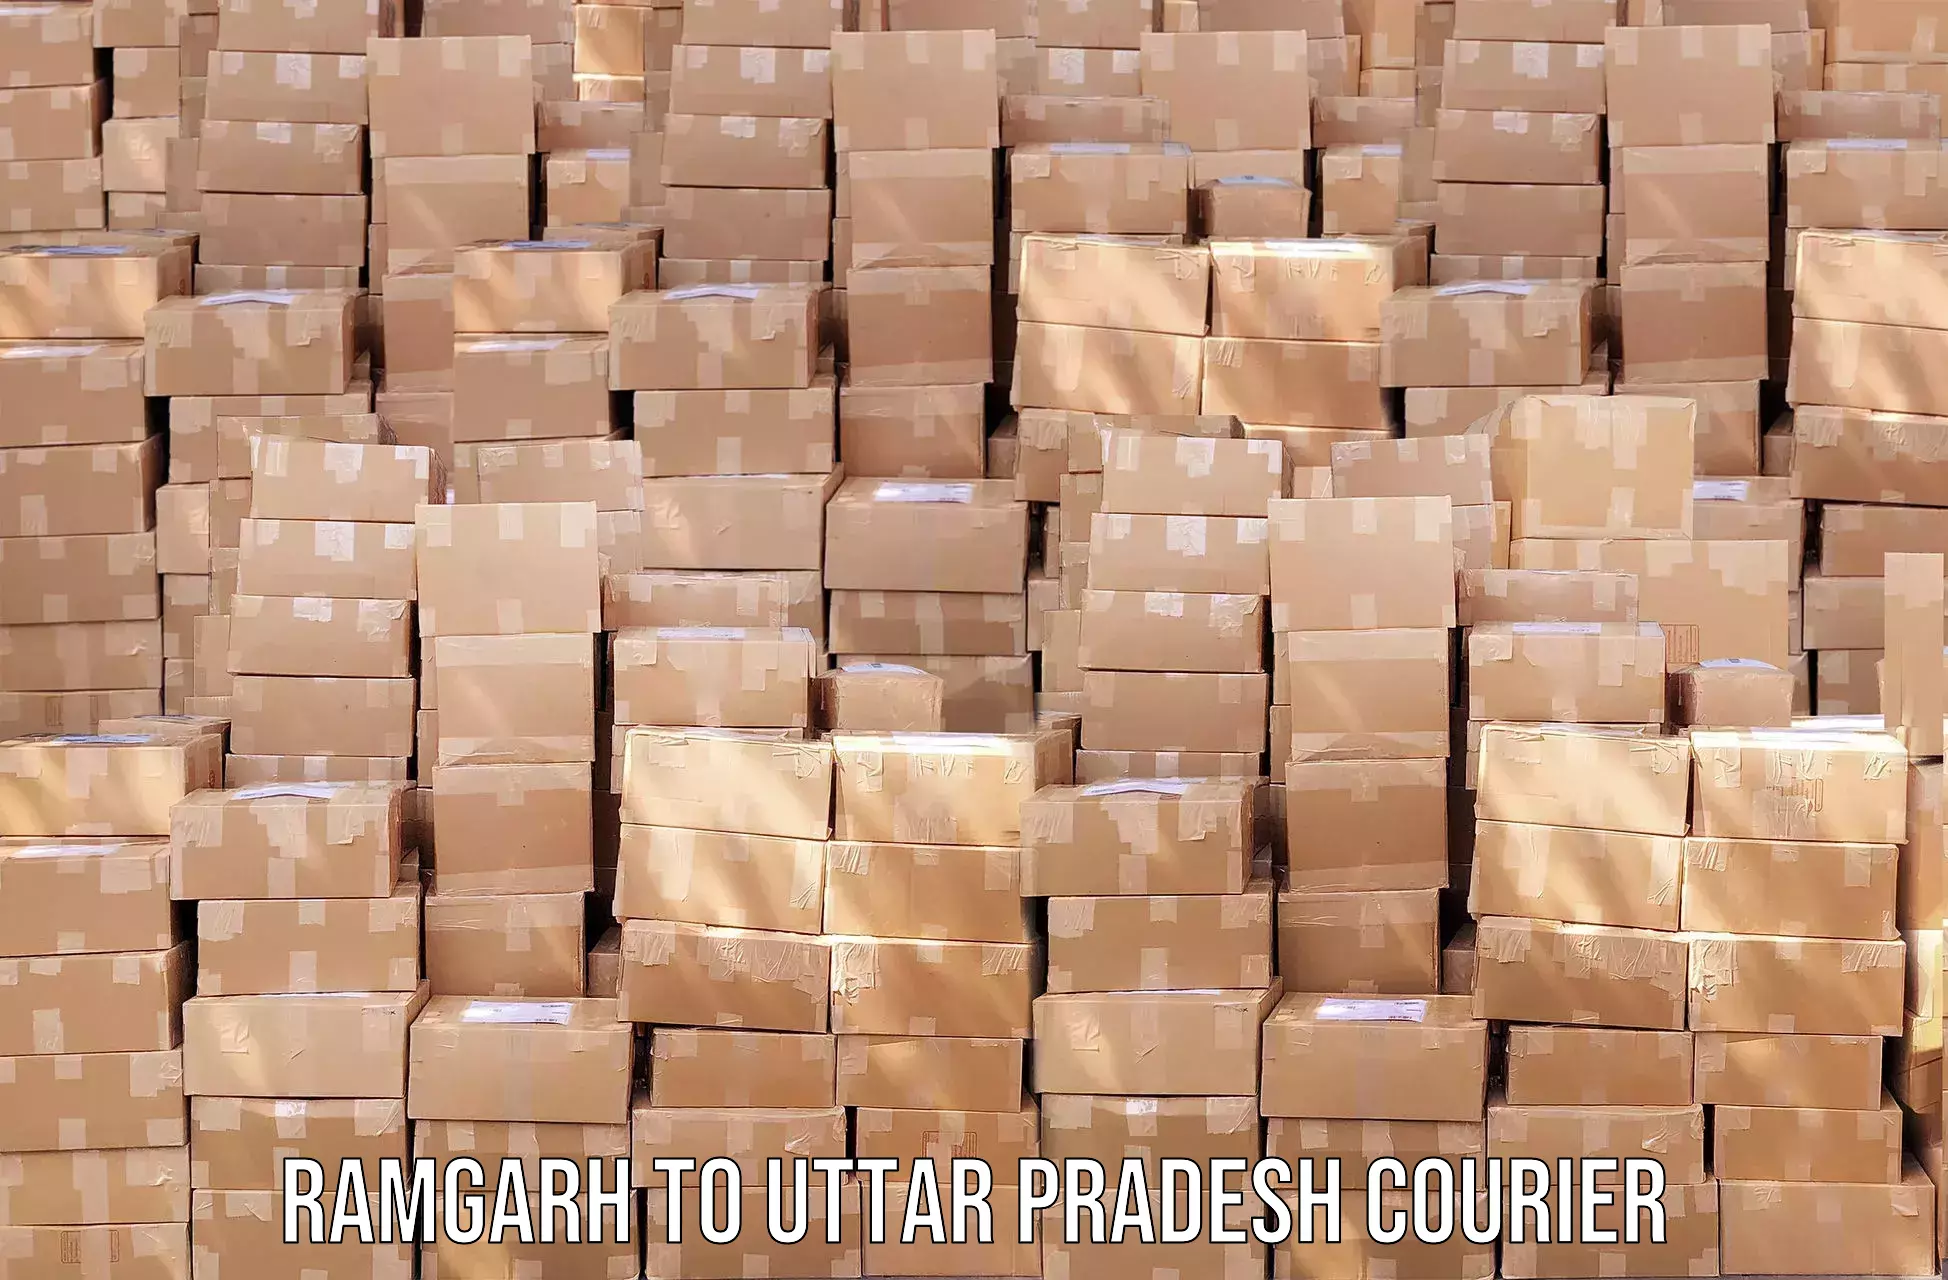 Express package handling Ramgarh to Kasganj